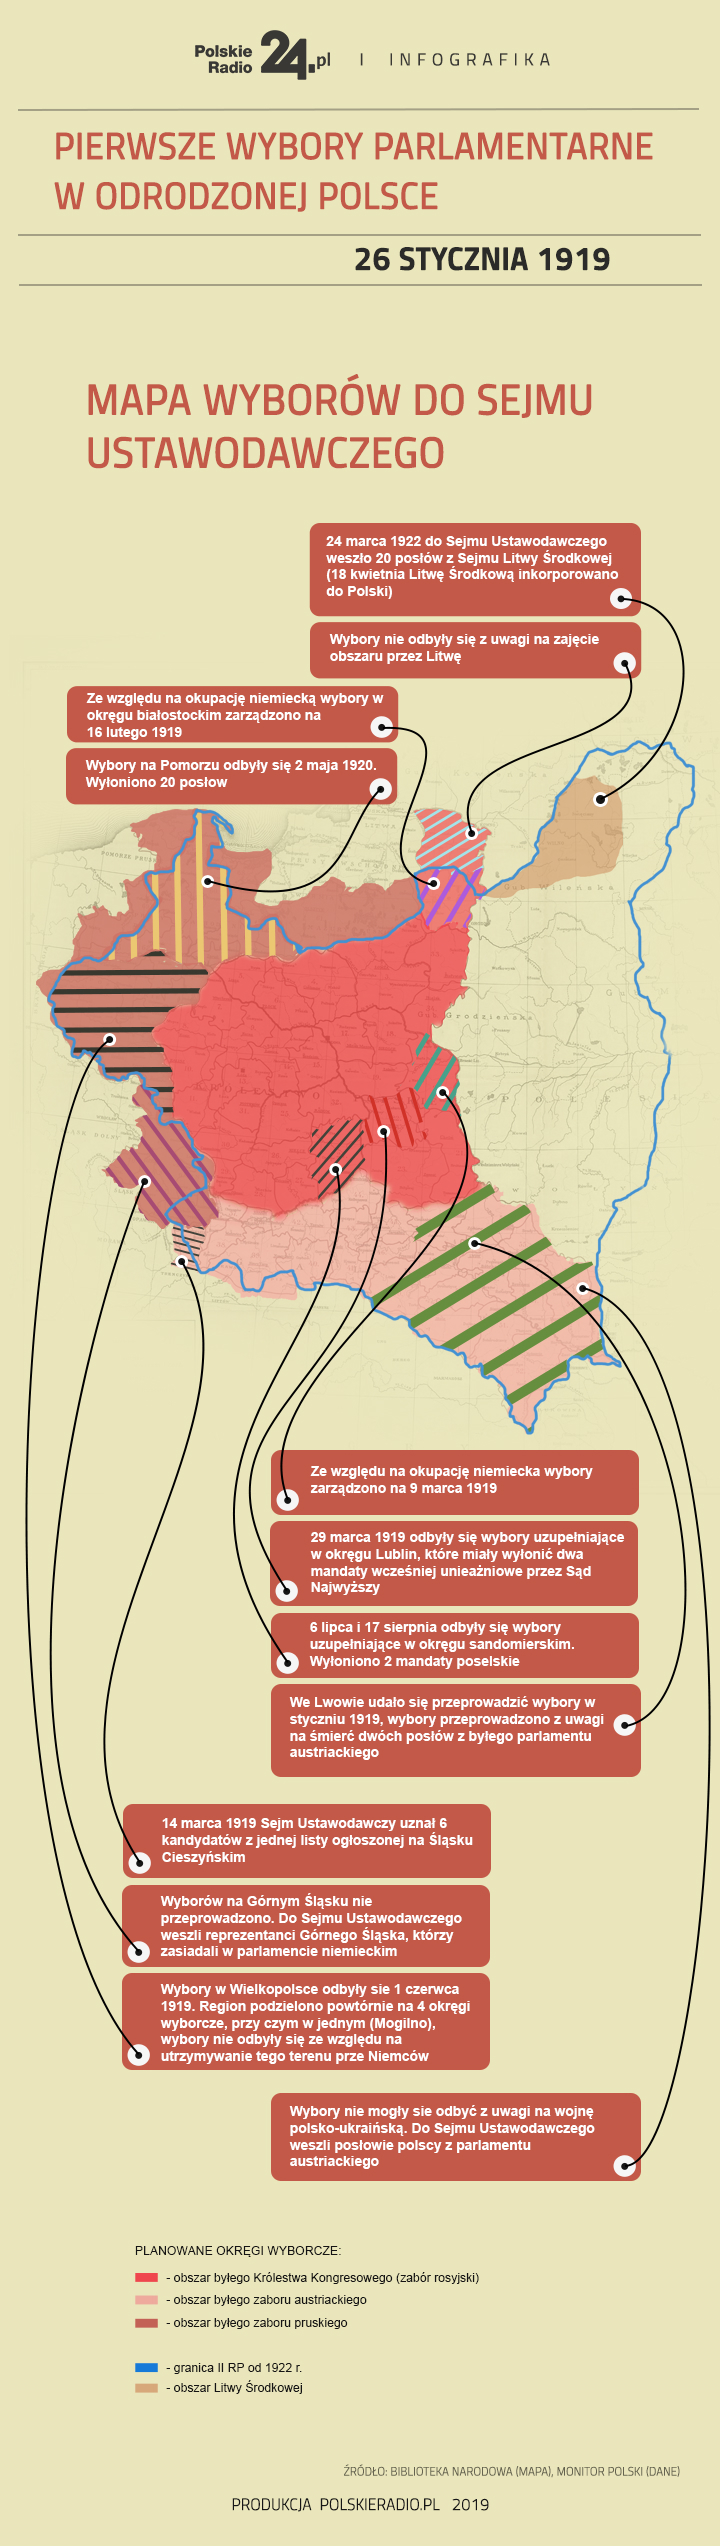 Mapa okręgów wyborczych do Sejmu Ustawodawczego. Infografika: Polskie Radio/Bartłomiej Makowski (red.)/Łukasz Haponiuk (graf.)